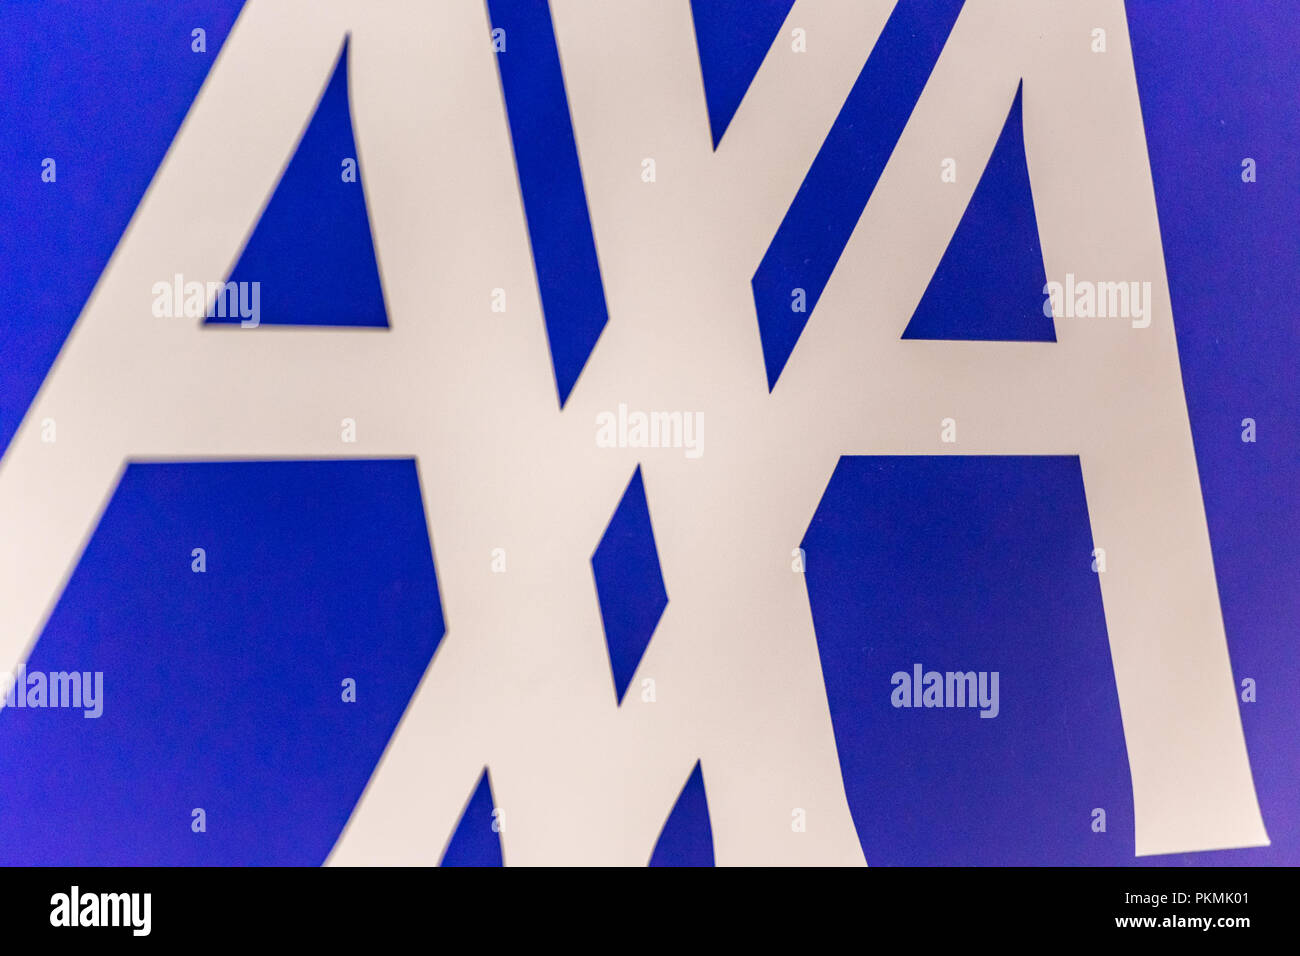 LUGO (RA), Italia - 11 settembre 2018: la polvere e lo sporco che copre il logo di AXA sul cartello Foto Stock